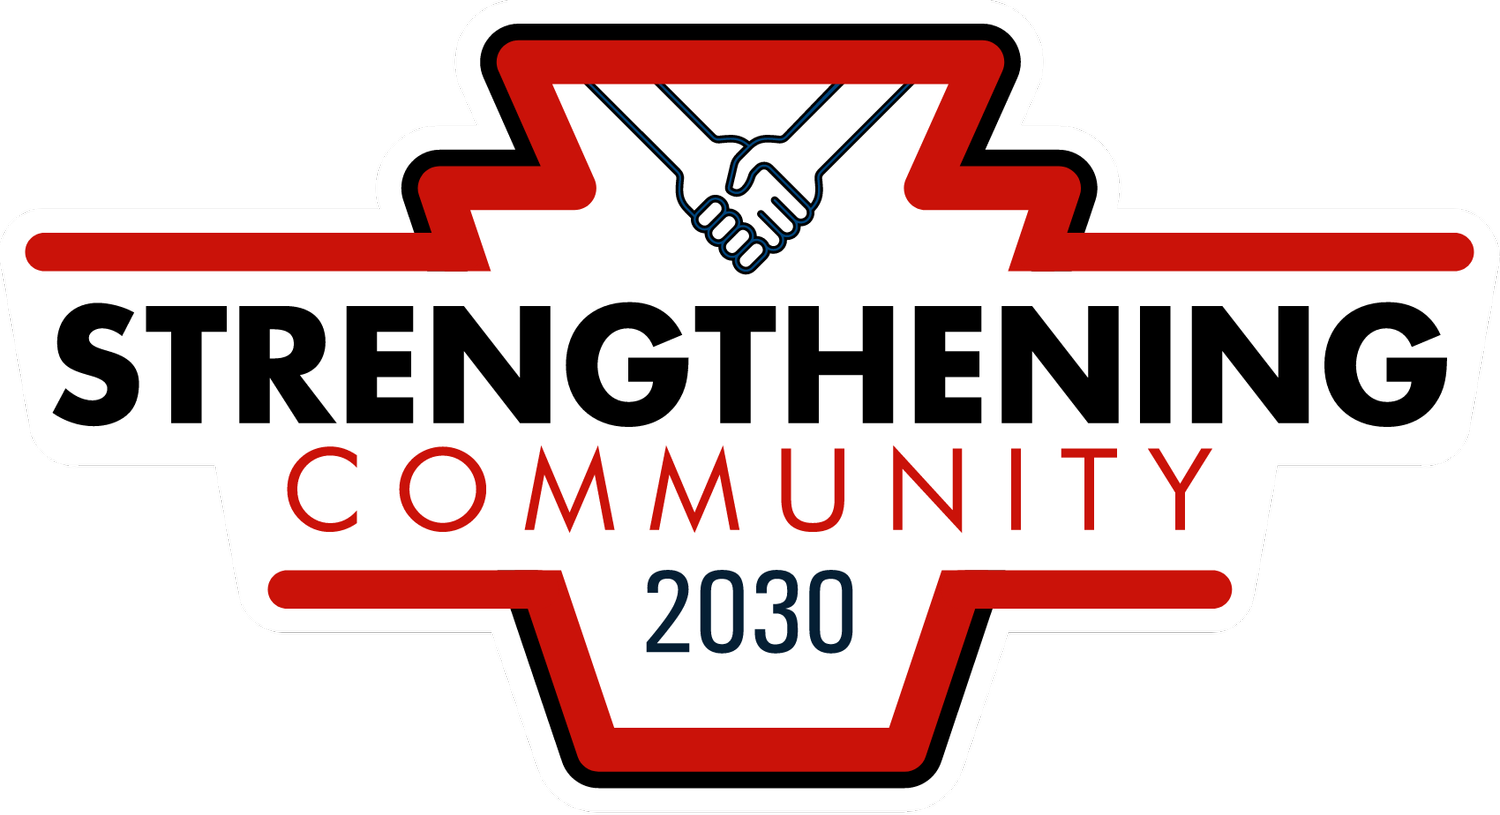 Strengthening Community 2030